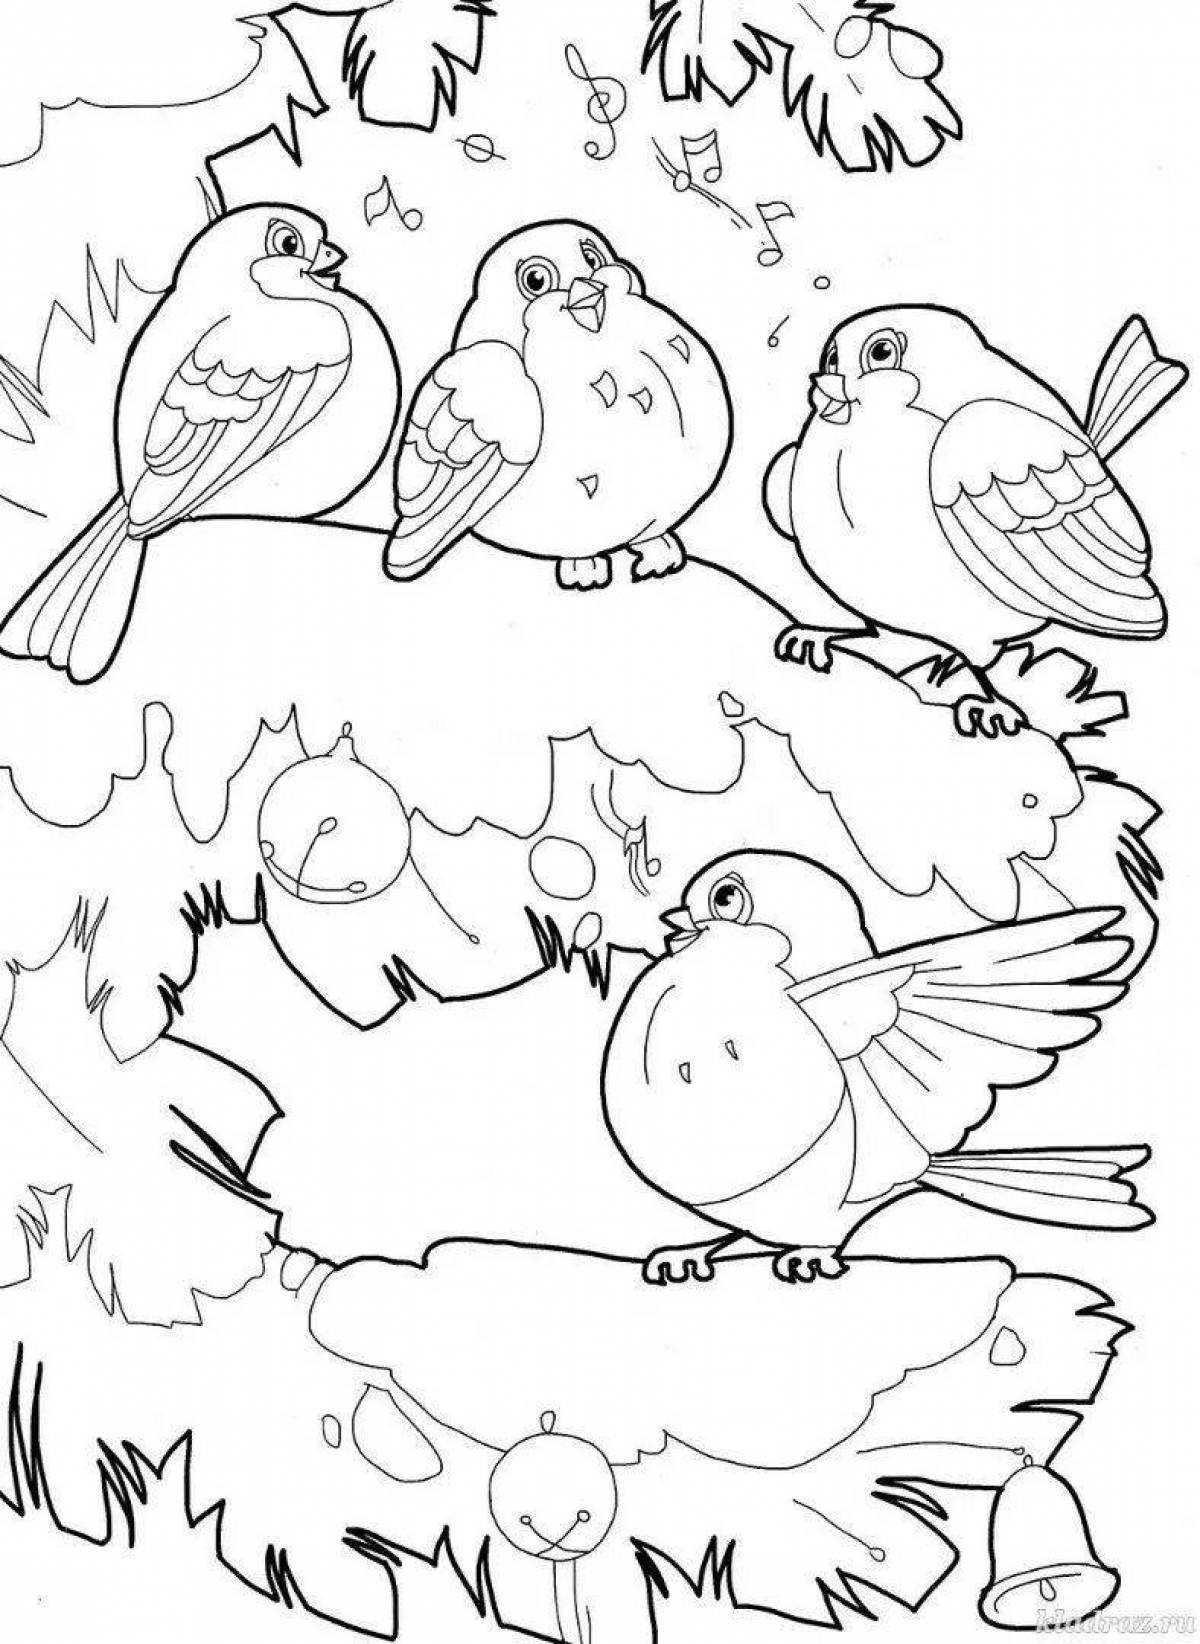 Яркая картинка «покорми птиц зимой» для детей 6-7 лет